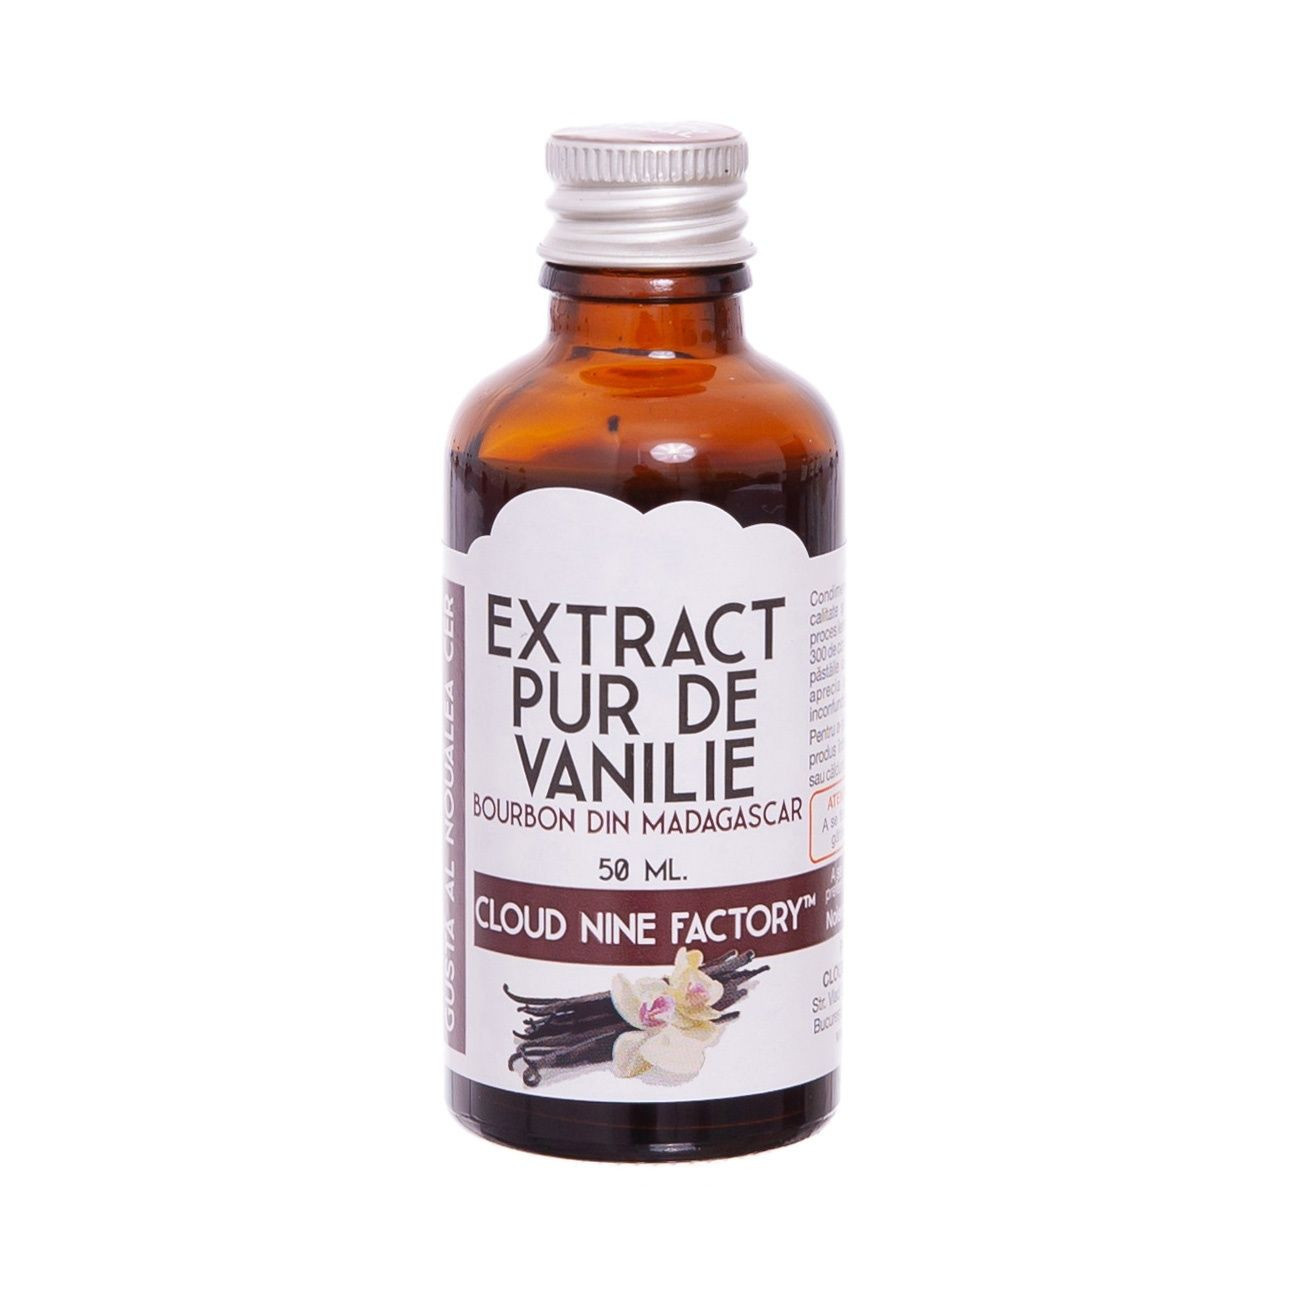 Extract pur de Vanilie 50 ml EV-50-M